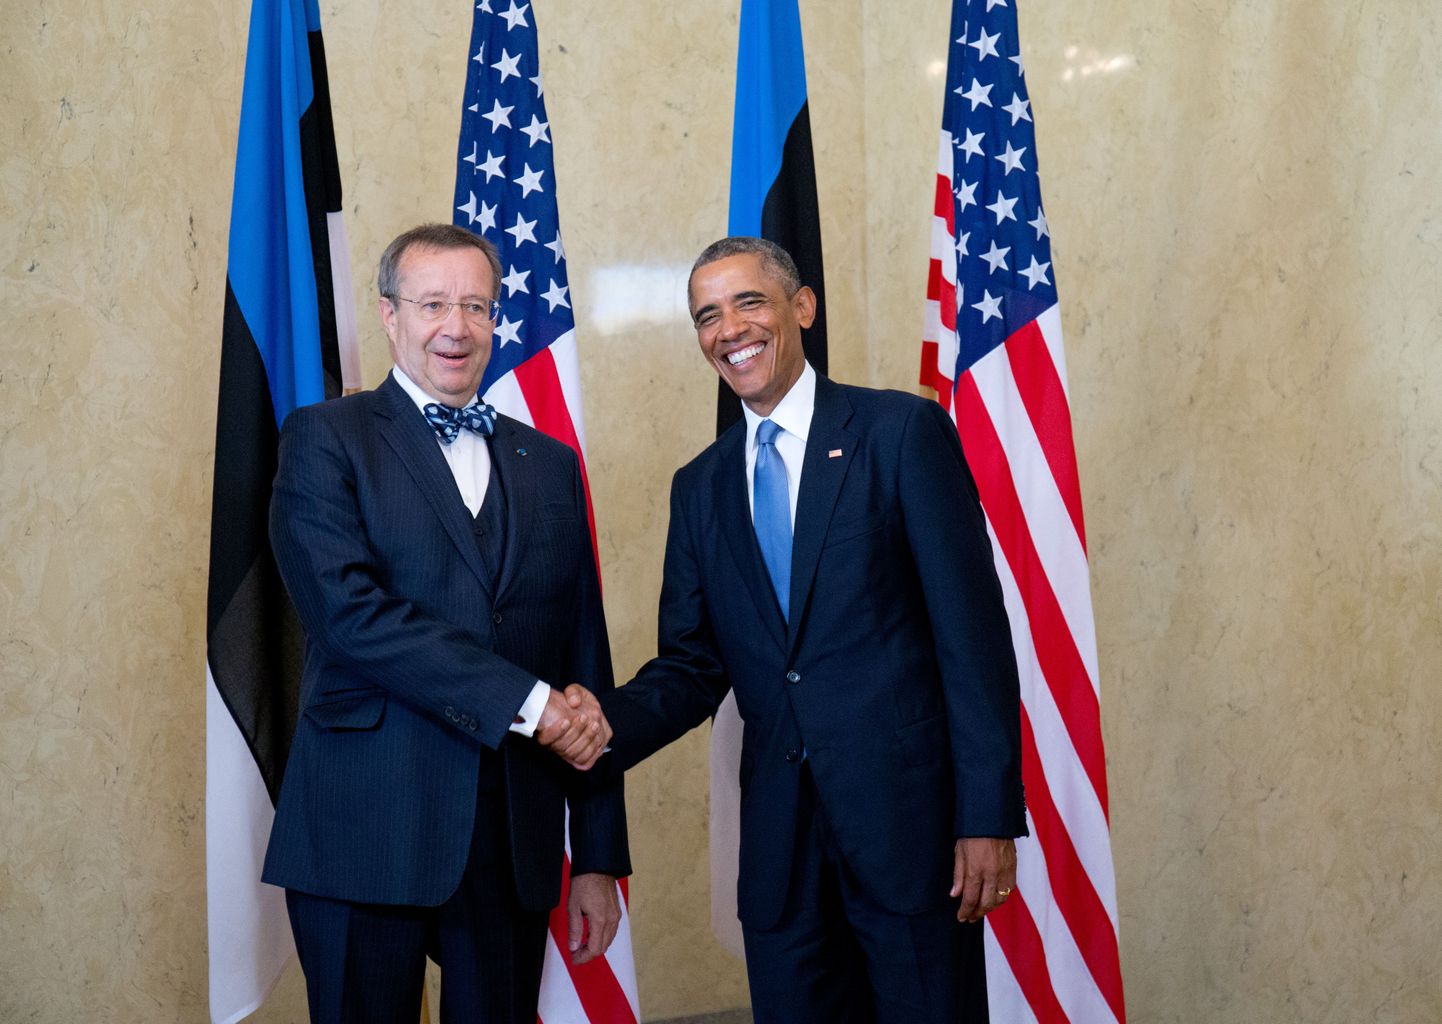 USA presidendi Barack Obama kohtumine president Toomas Hendrik Ilvesega Kadrioru lossis.